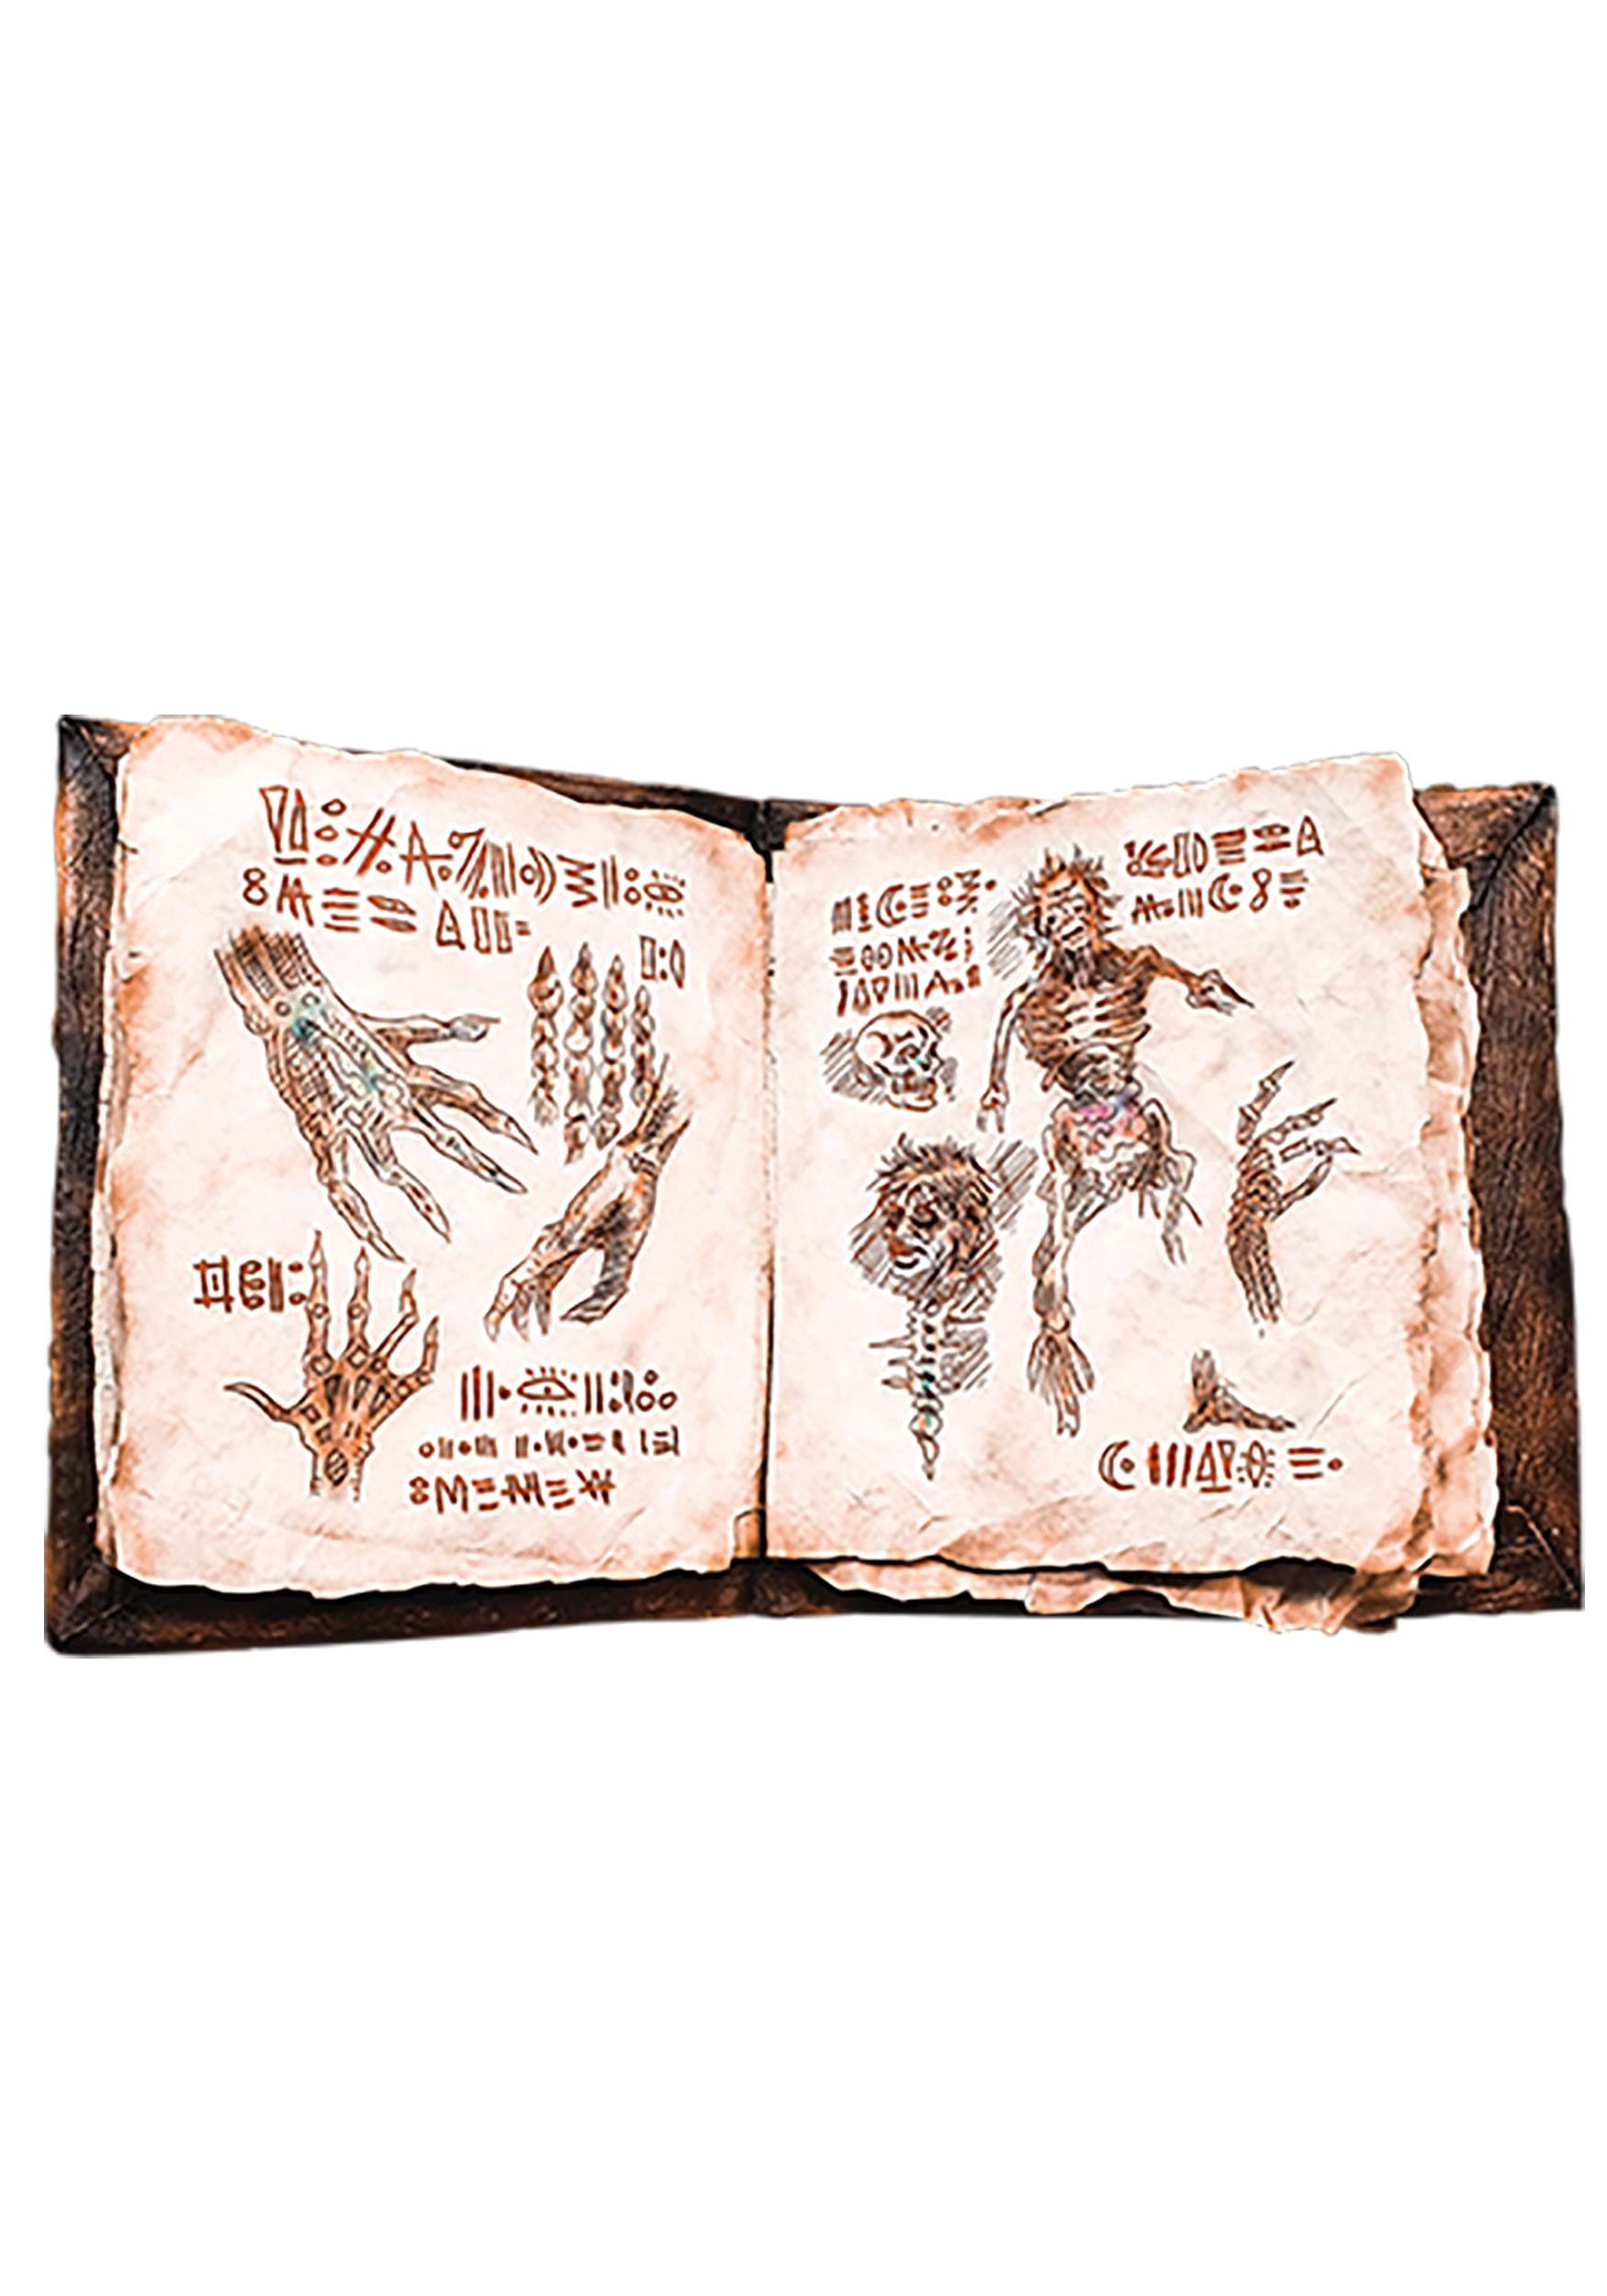 Evil Dead 2 Necronomicon Prop Libro con páginas Multicolor Colombia